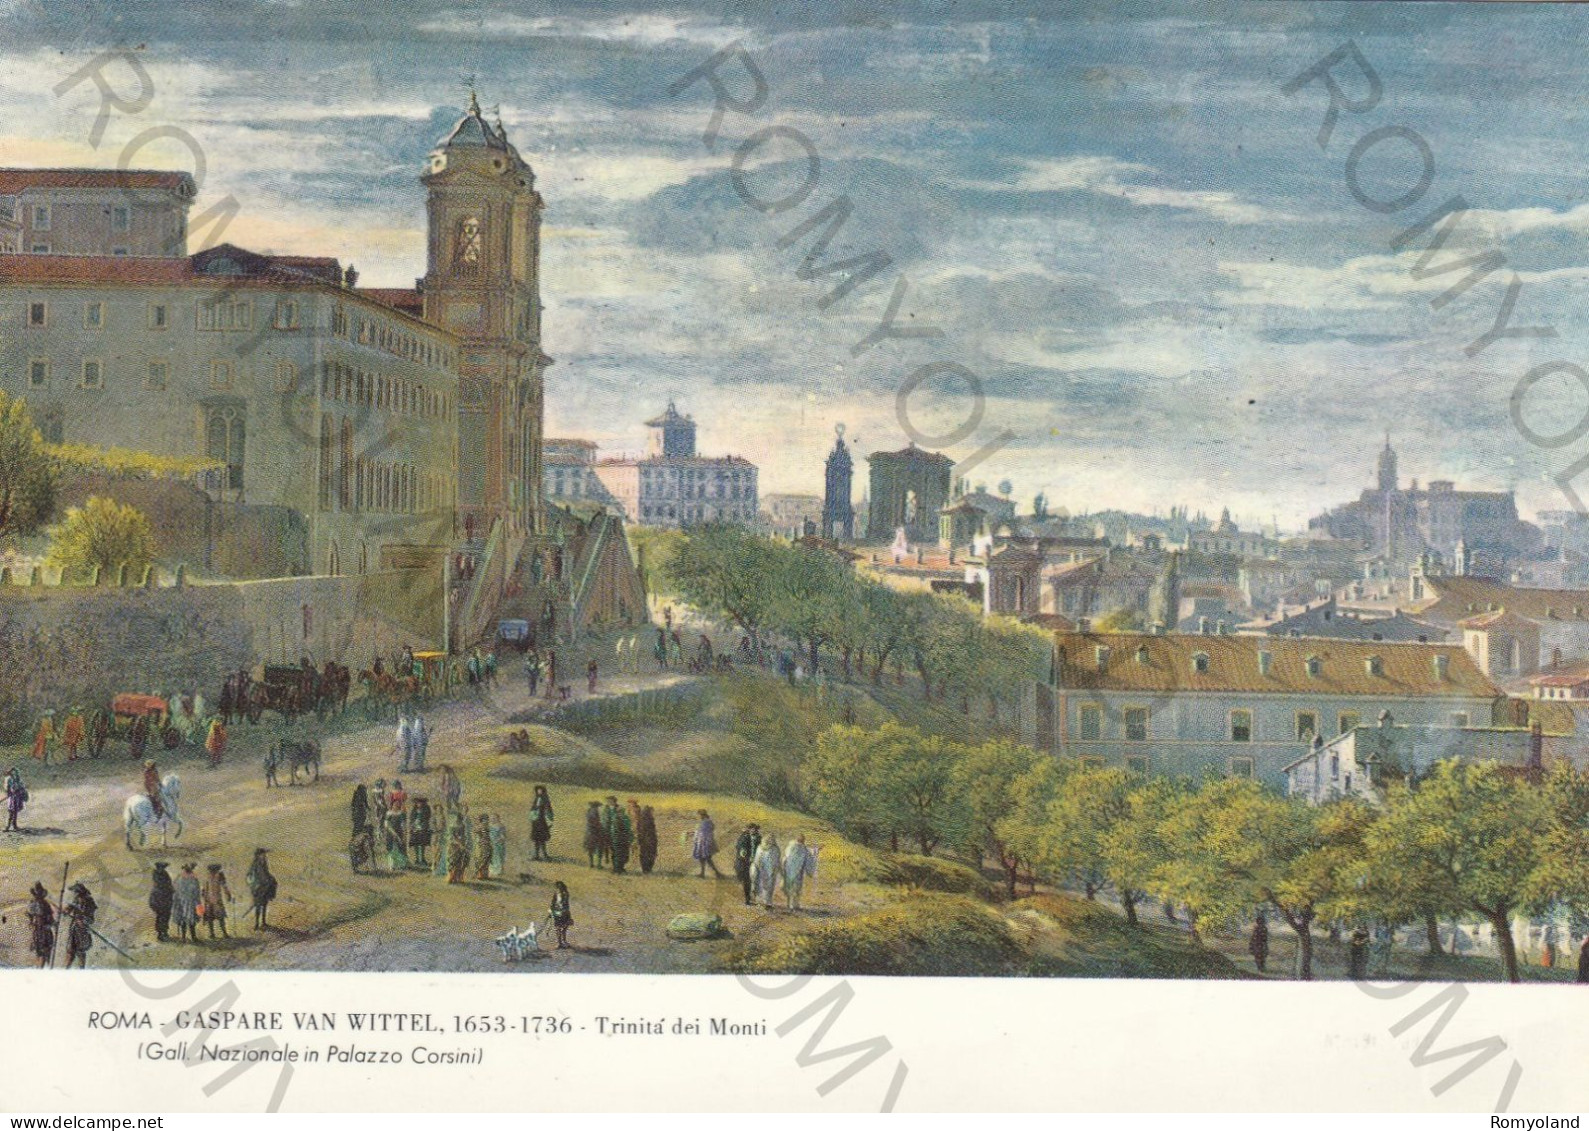 CARTOLINA  ROMA,LAZIO-GALL.NAZIONALE IN PALAZZO CORSINI-GASPARE VAN WITTEL 1653-1736 TRINITA DEI MONTI-NON VIAGGIATA - Exhibitions